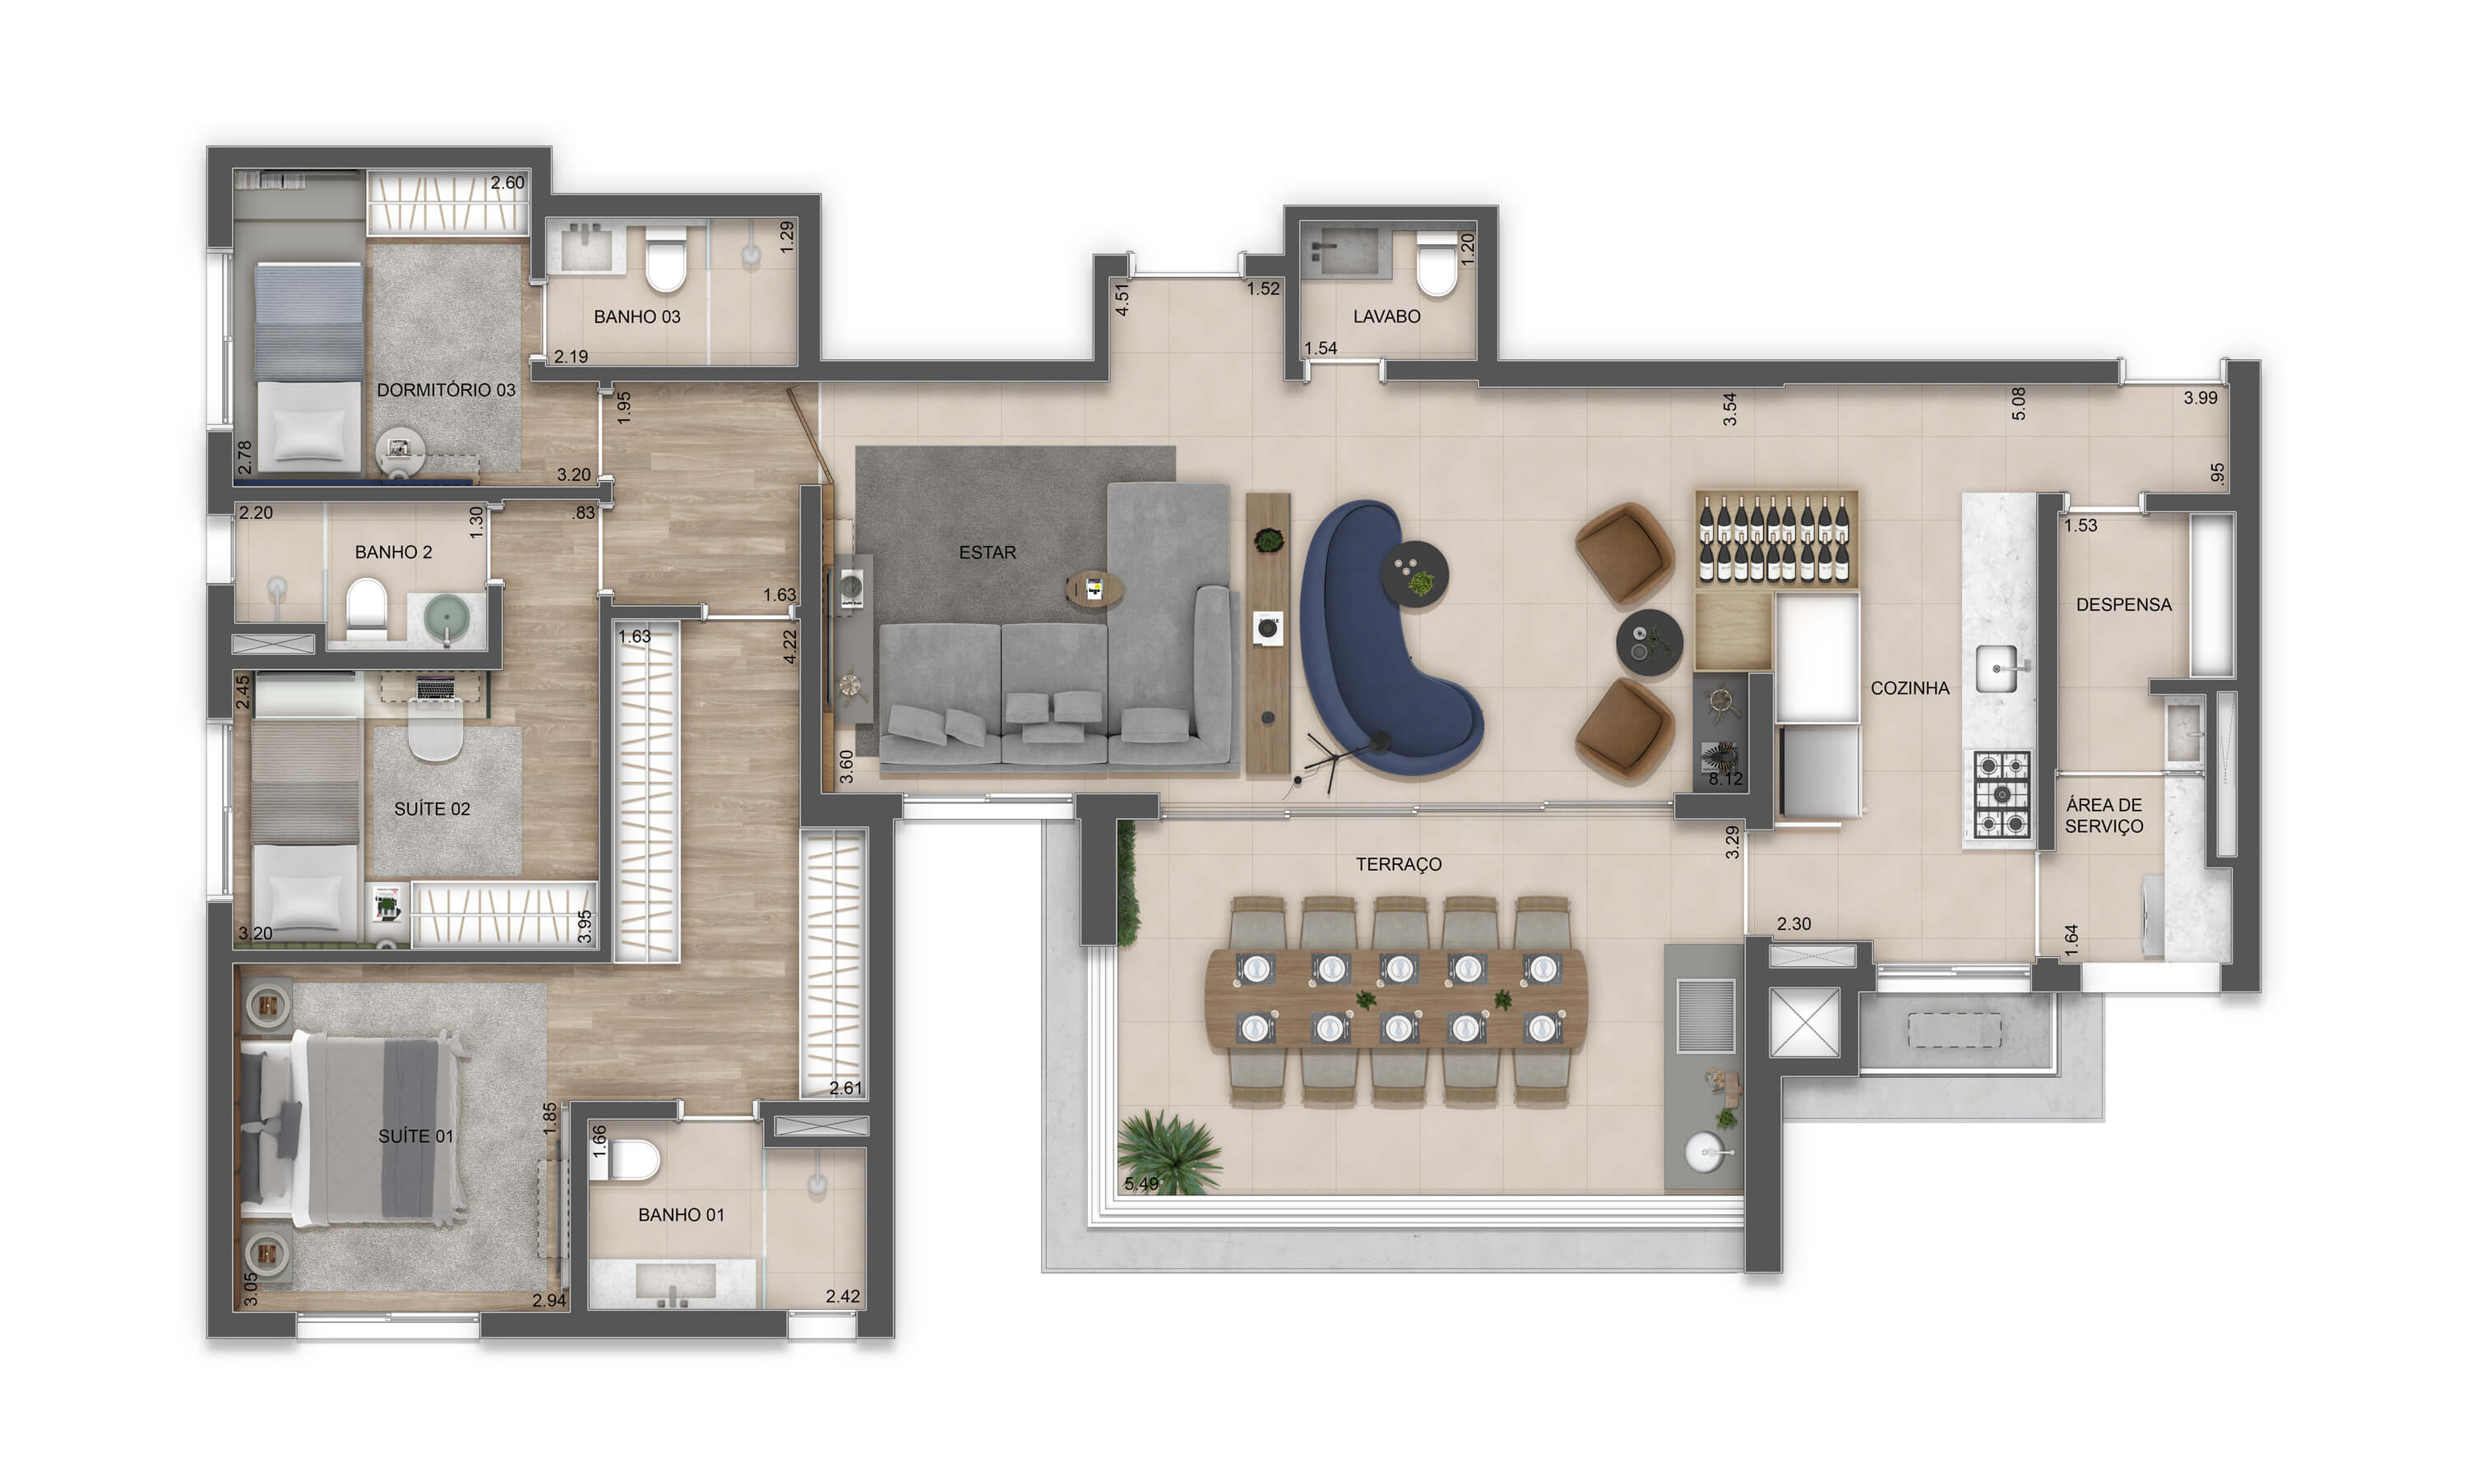 Residencial Florear - Opção com 3 suites sala ampliada e despensa